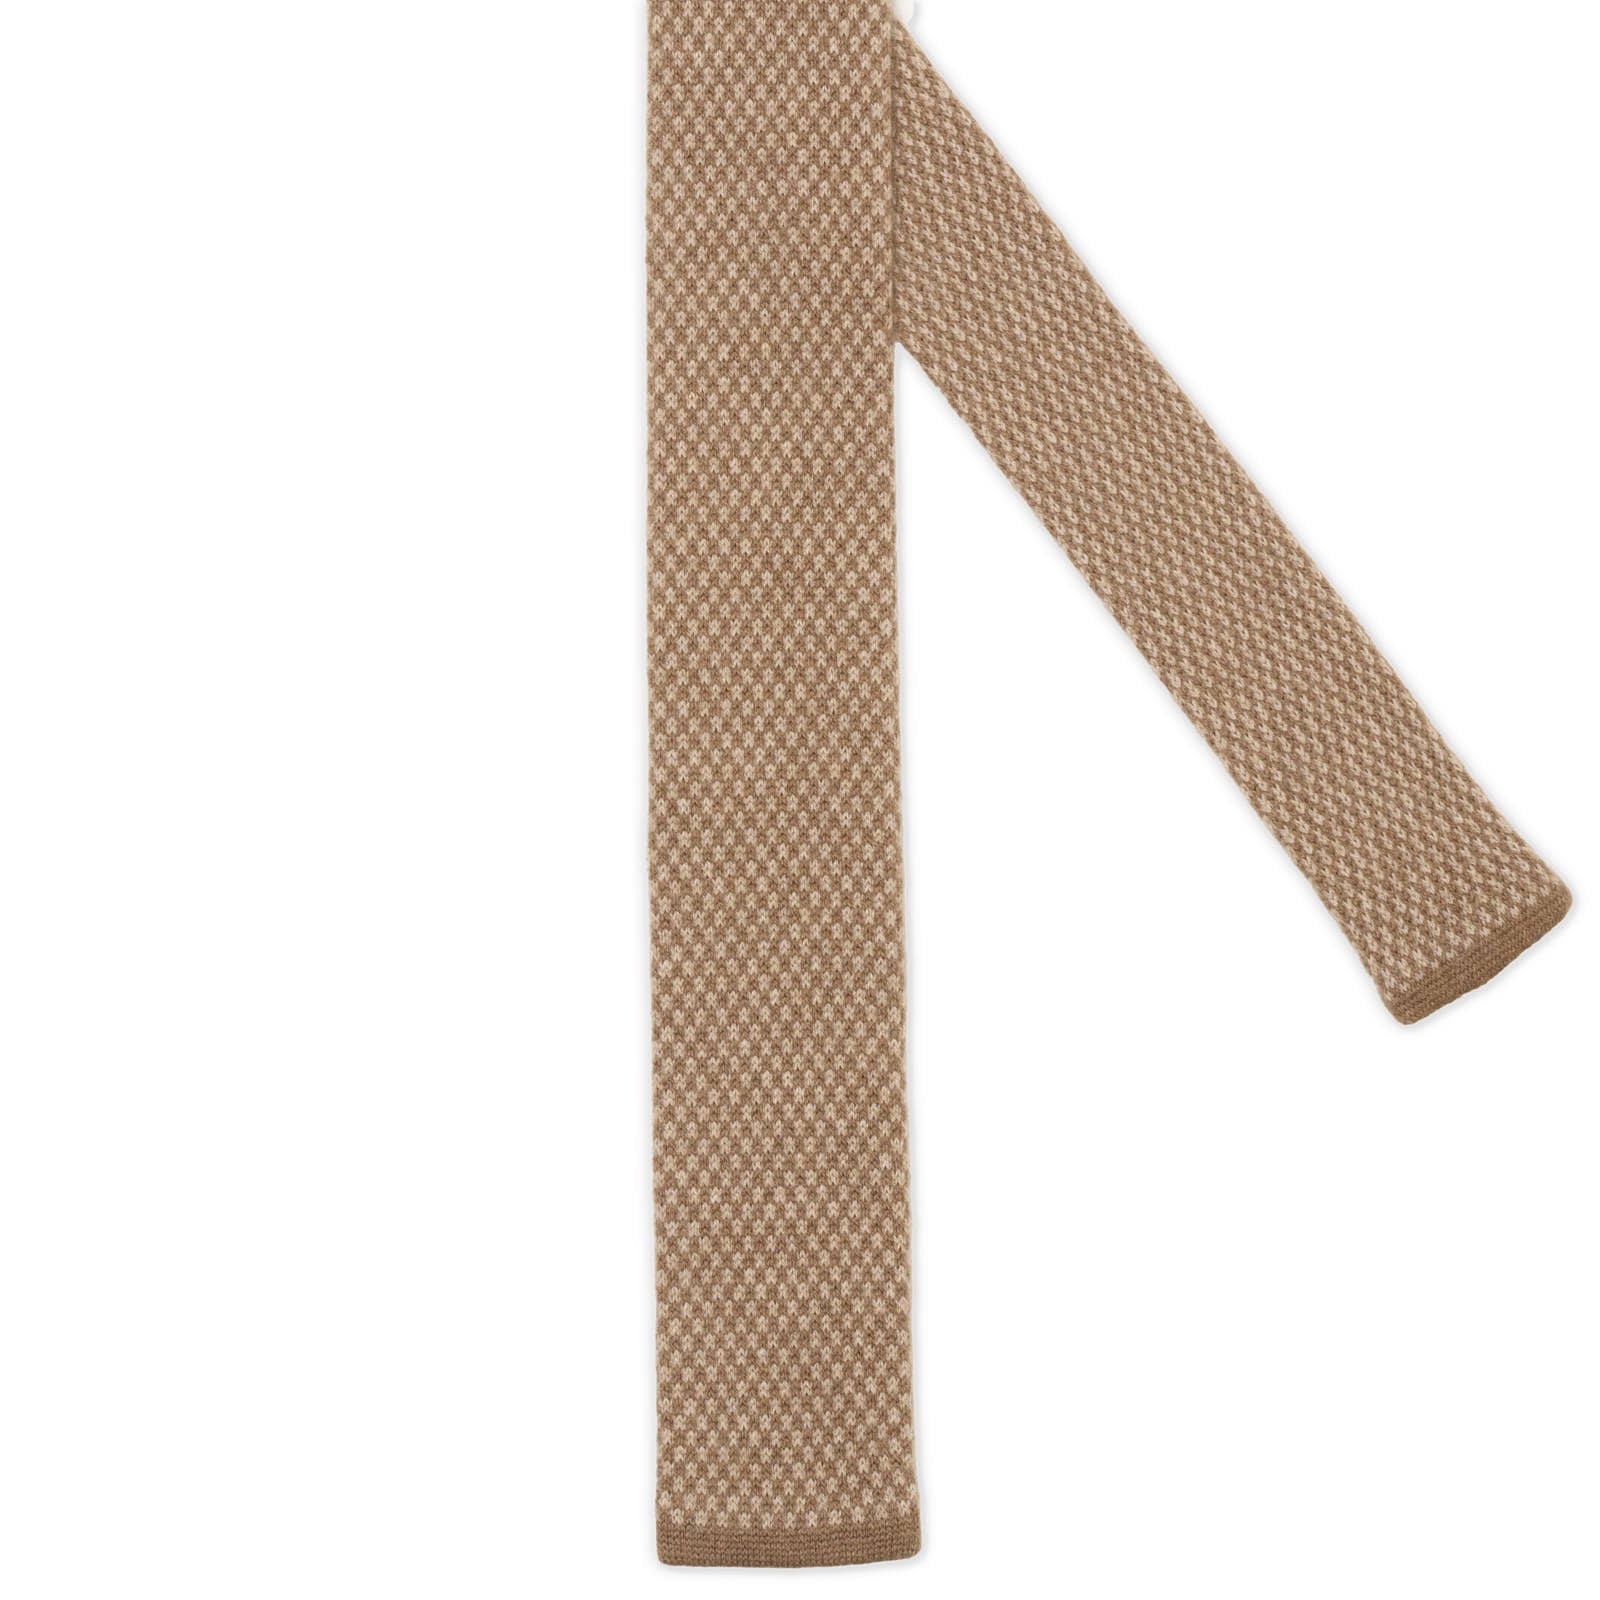 MATTABISCH FOR VANNUCCI Brown Micro Pattern Cashmere Knit Tie NEW